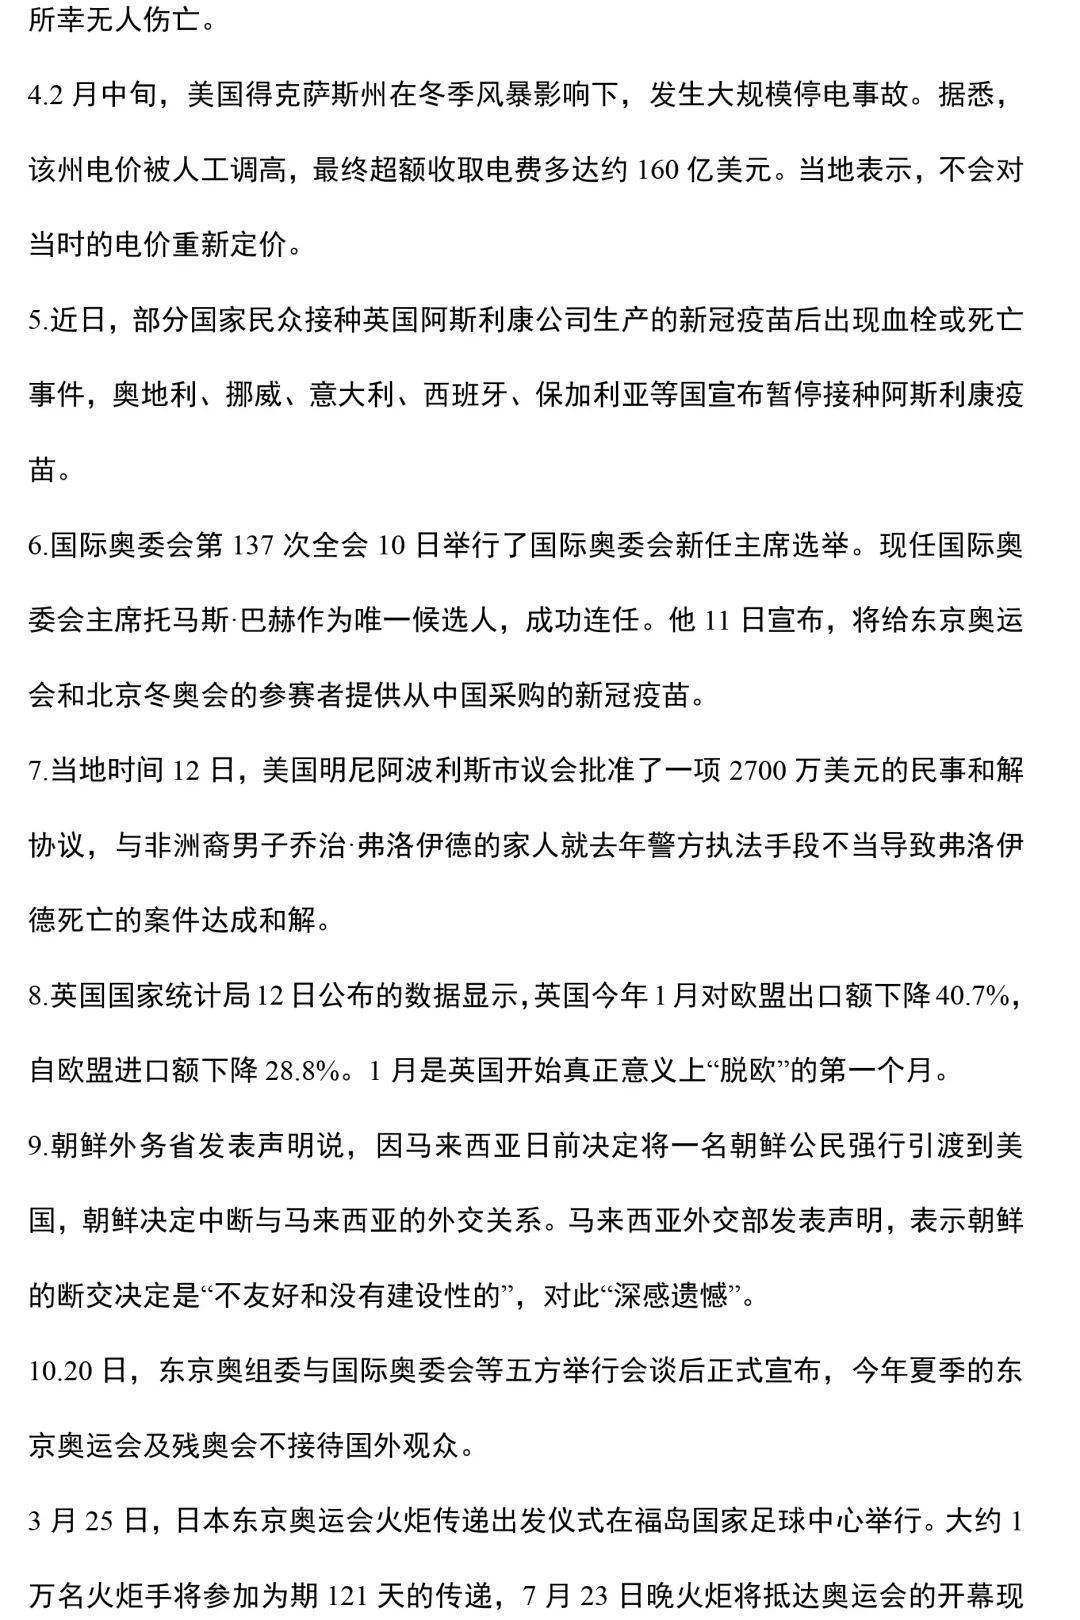 伤残人员dbcate 新闻,是一个汉语词语,意思有二种其一指借助语言文字